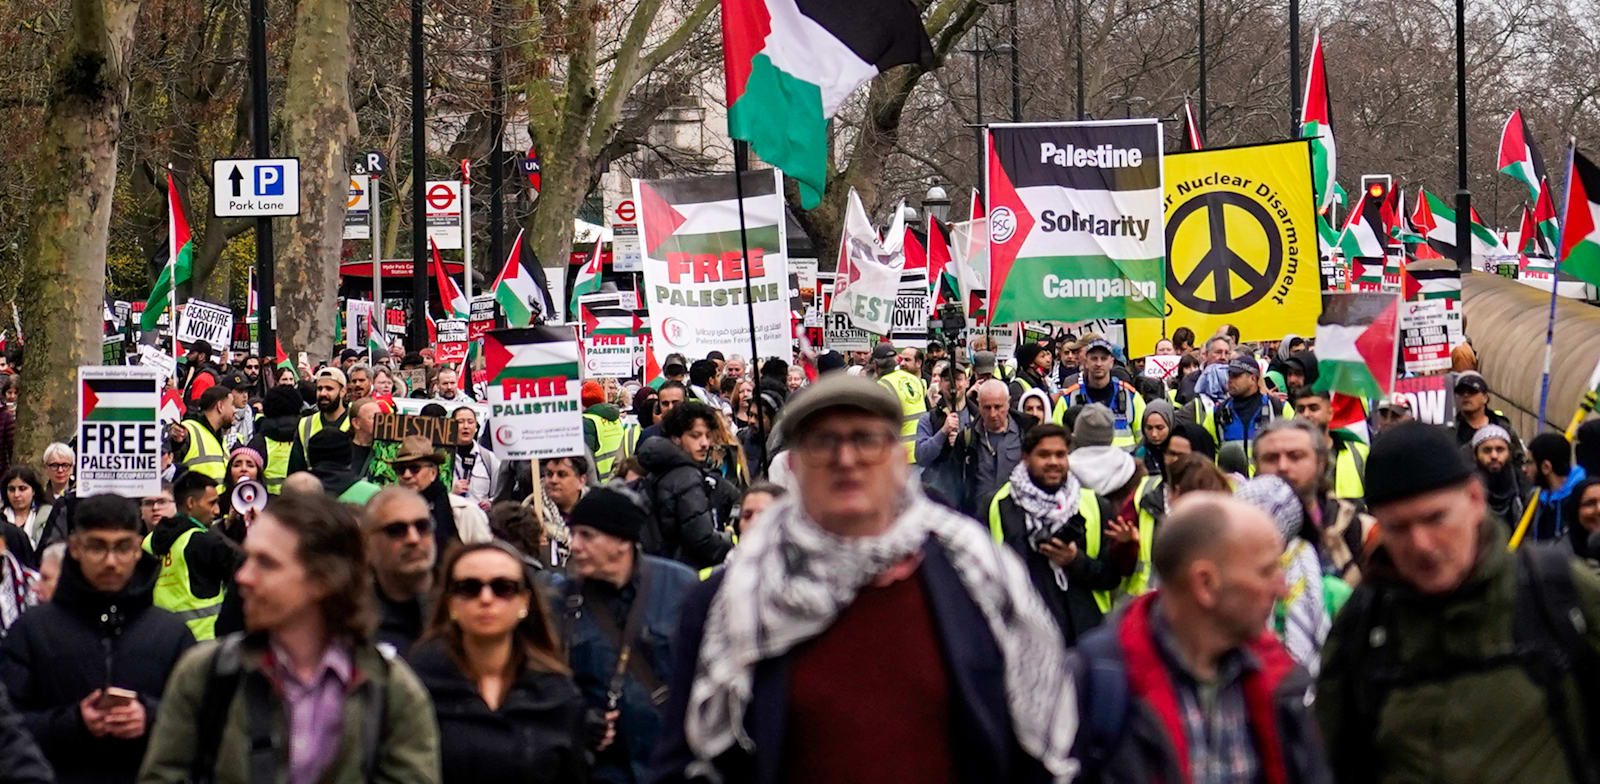 הפגנה פרו־פלסטינית בלונדון, בפברואר / צילום: ap, Alberto Pezzali